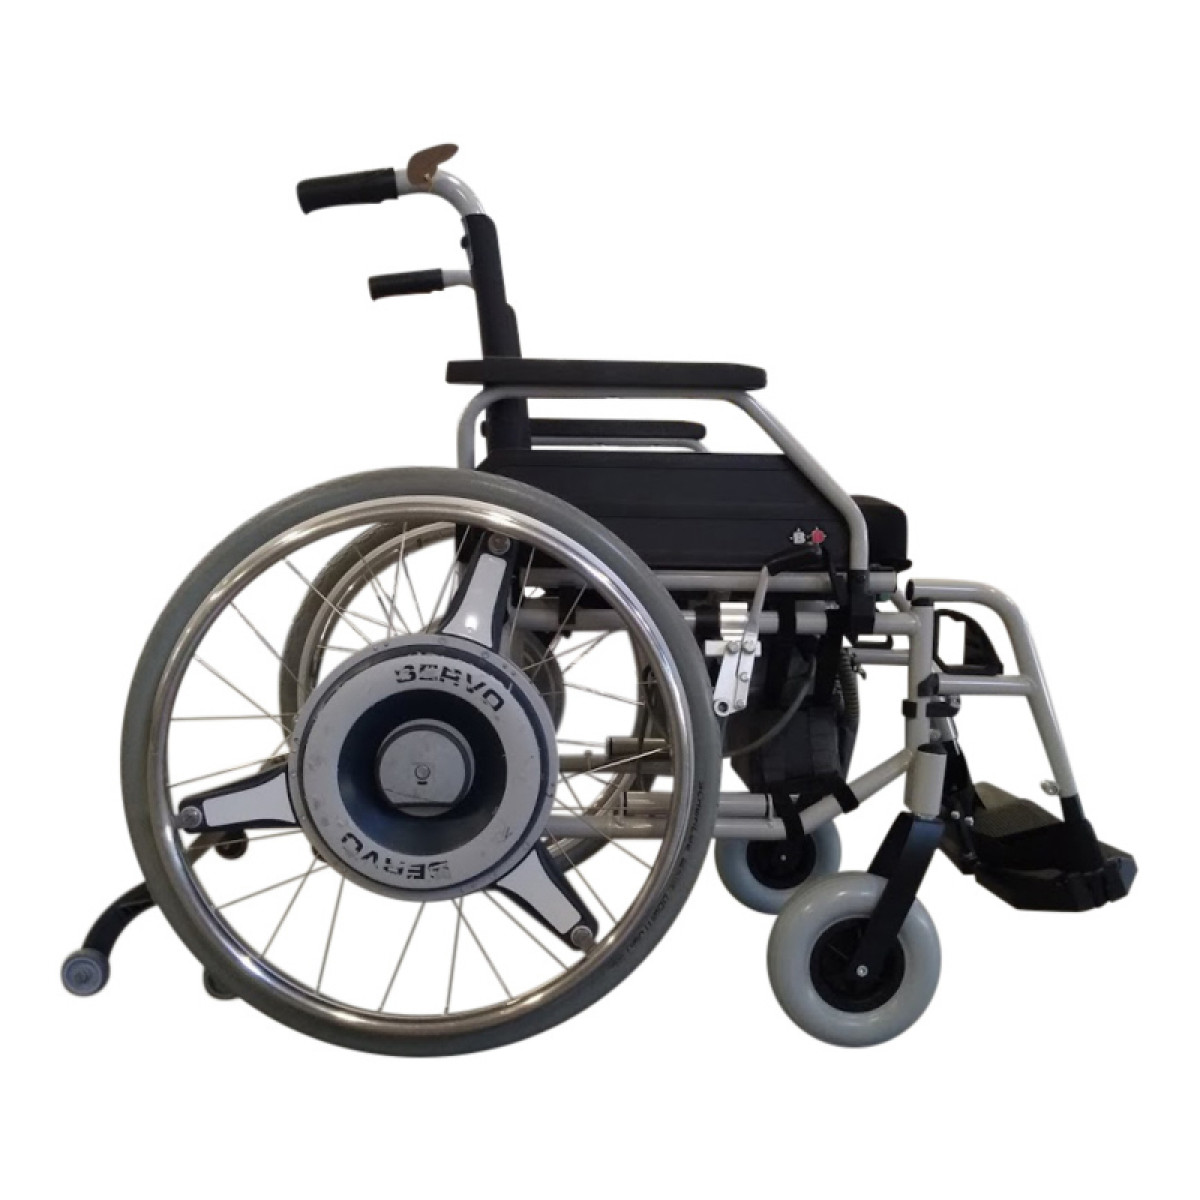 Насос для коляски. Электротяга для инвалидной коляски. Puls 240 инвалидная электроколяска. Электронабор для инвалидной коляски. Мотор колесо для инвалидной коляски Meyra.